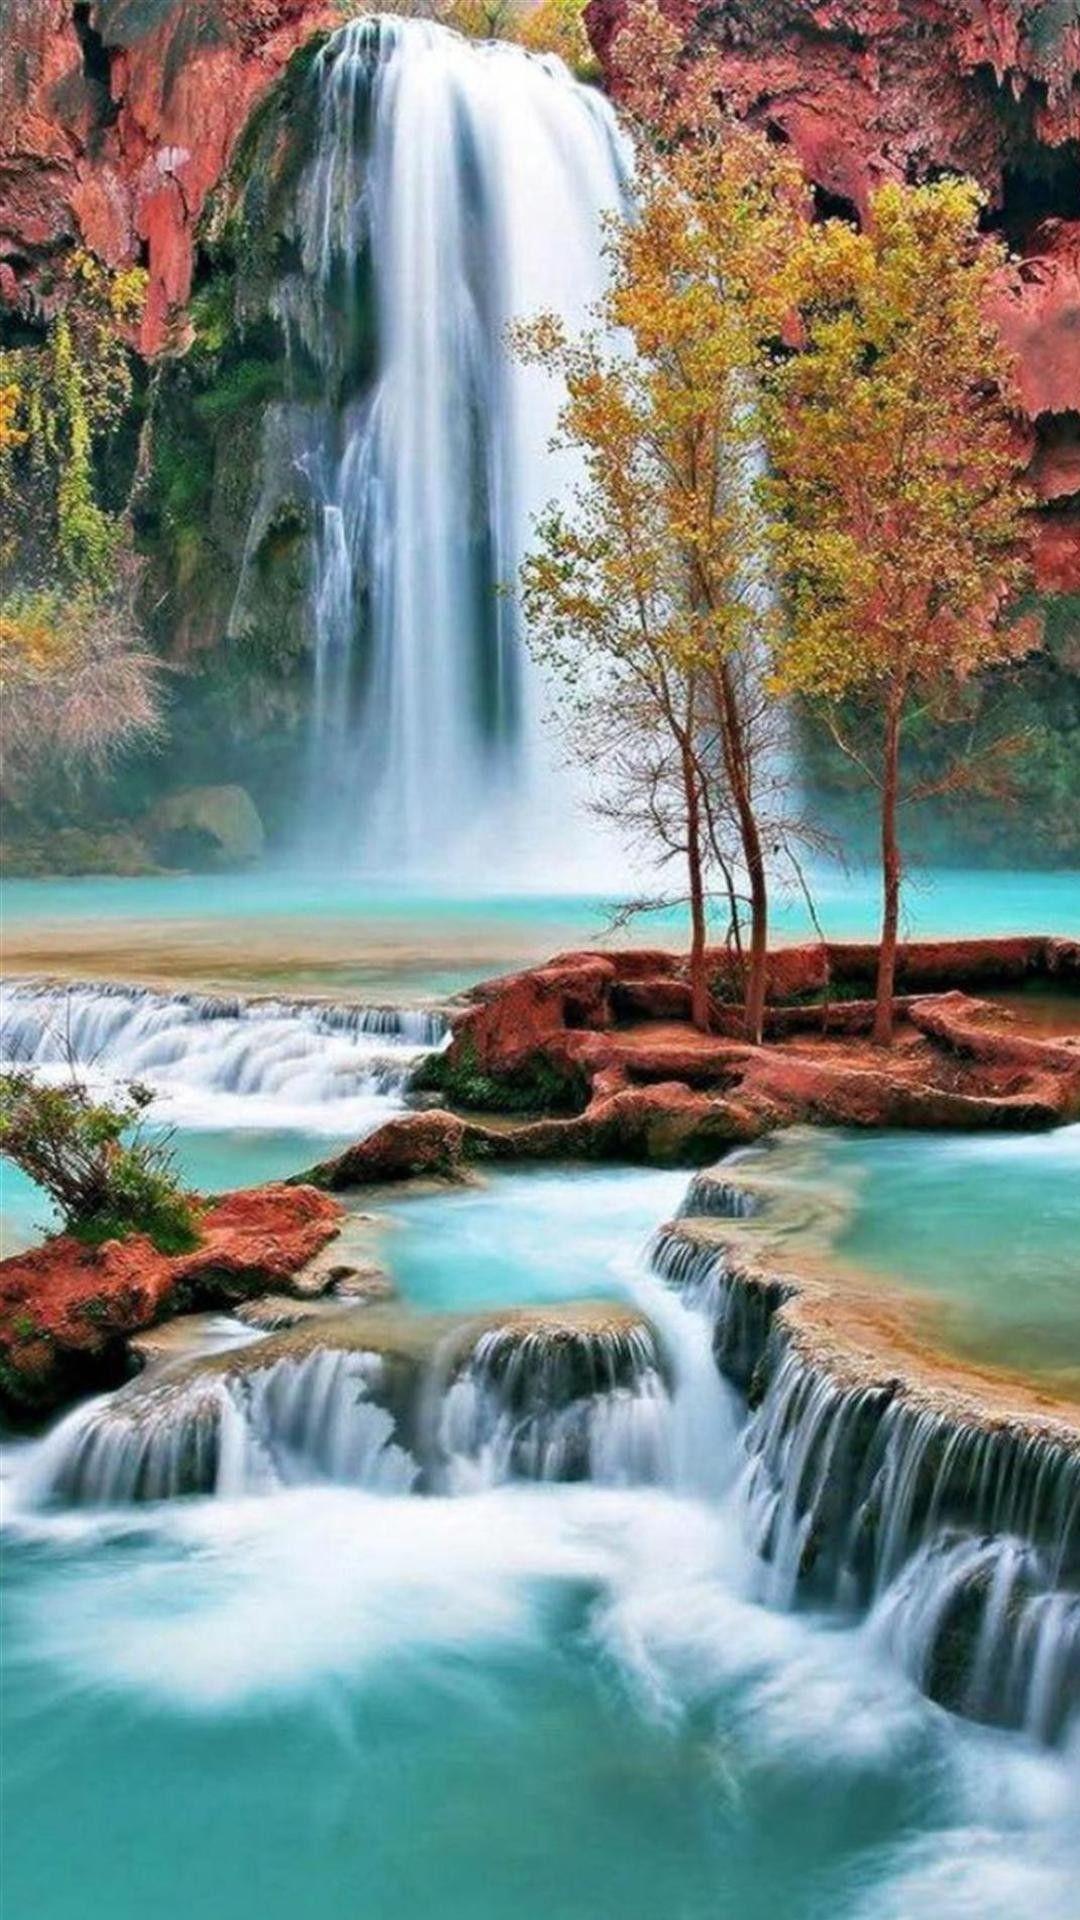 Waterfall Galaxy S4 Wallpaper hd